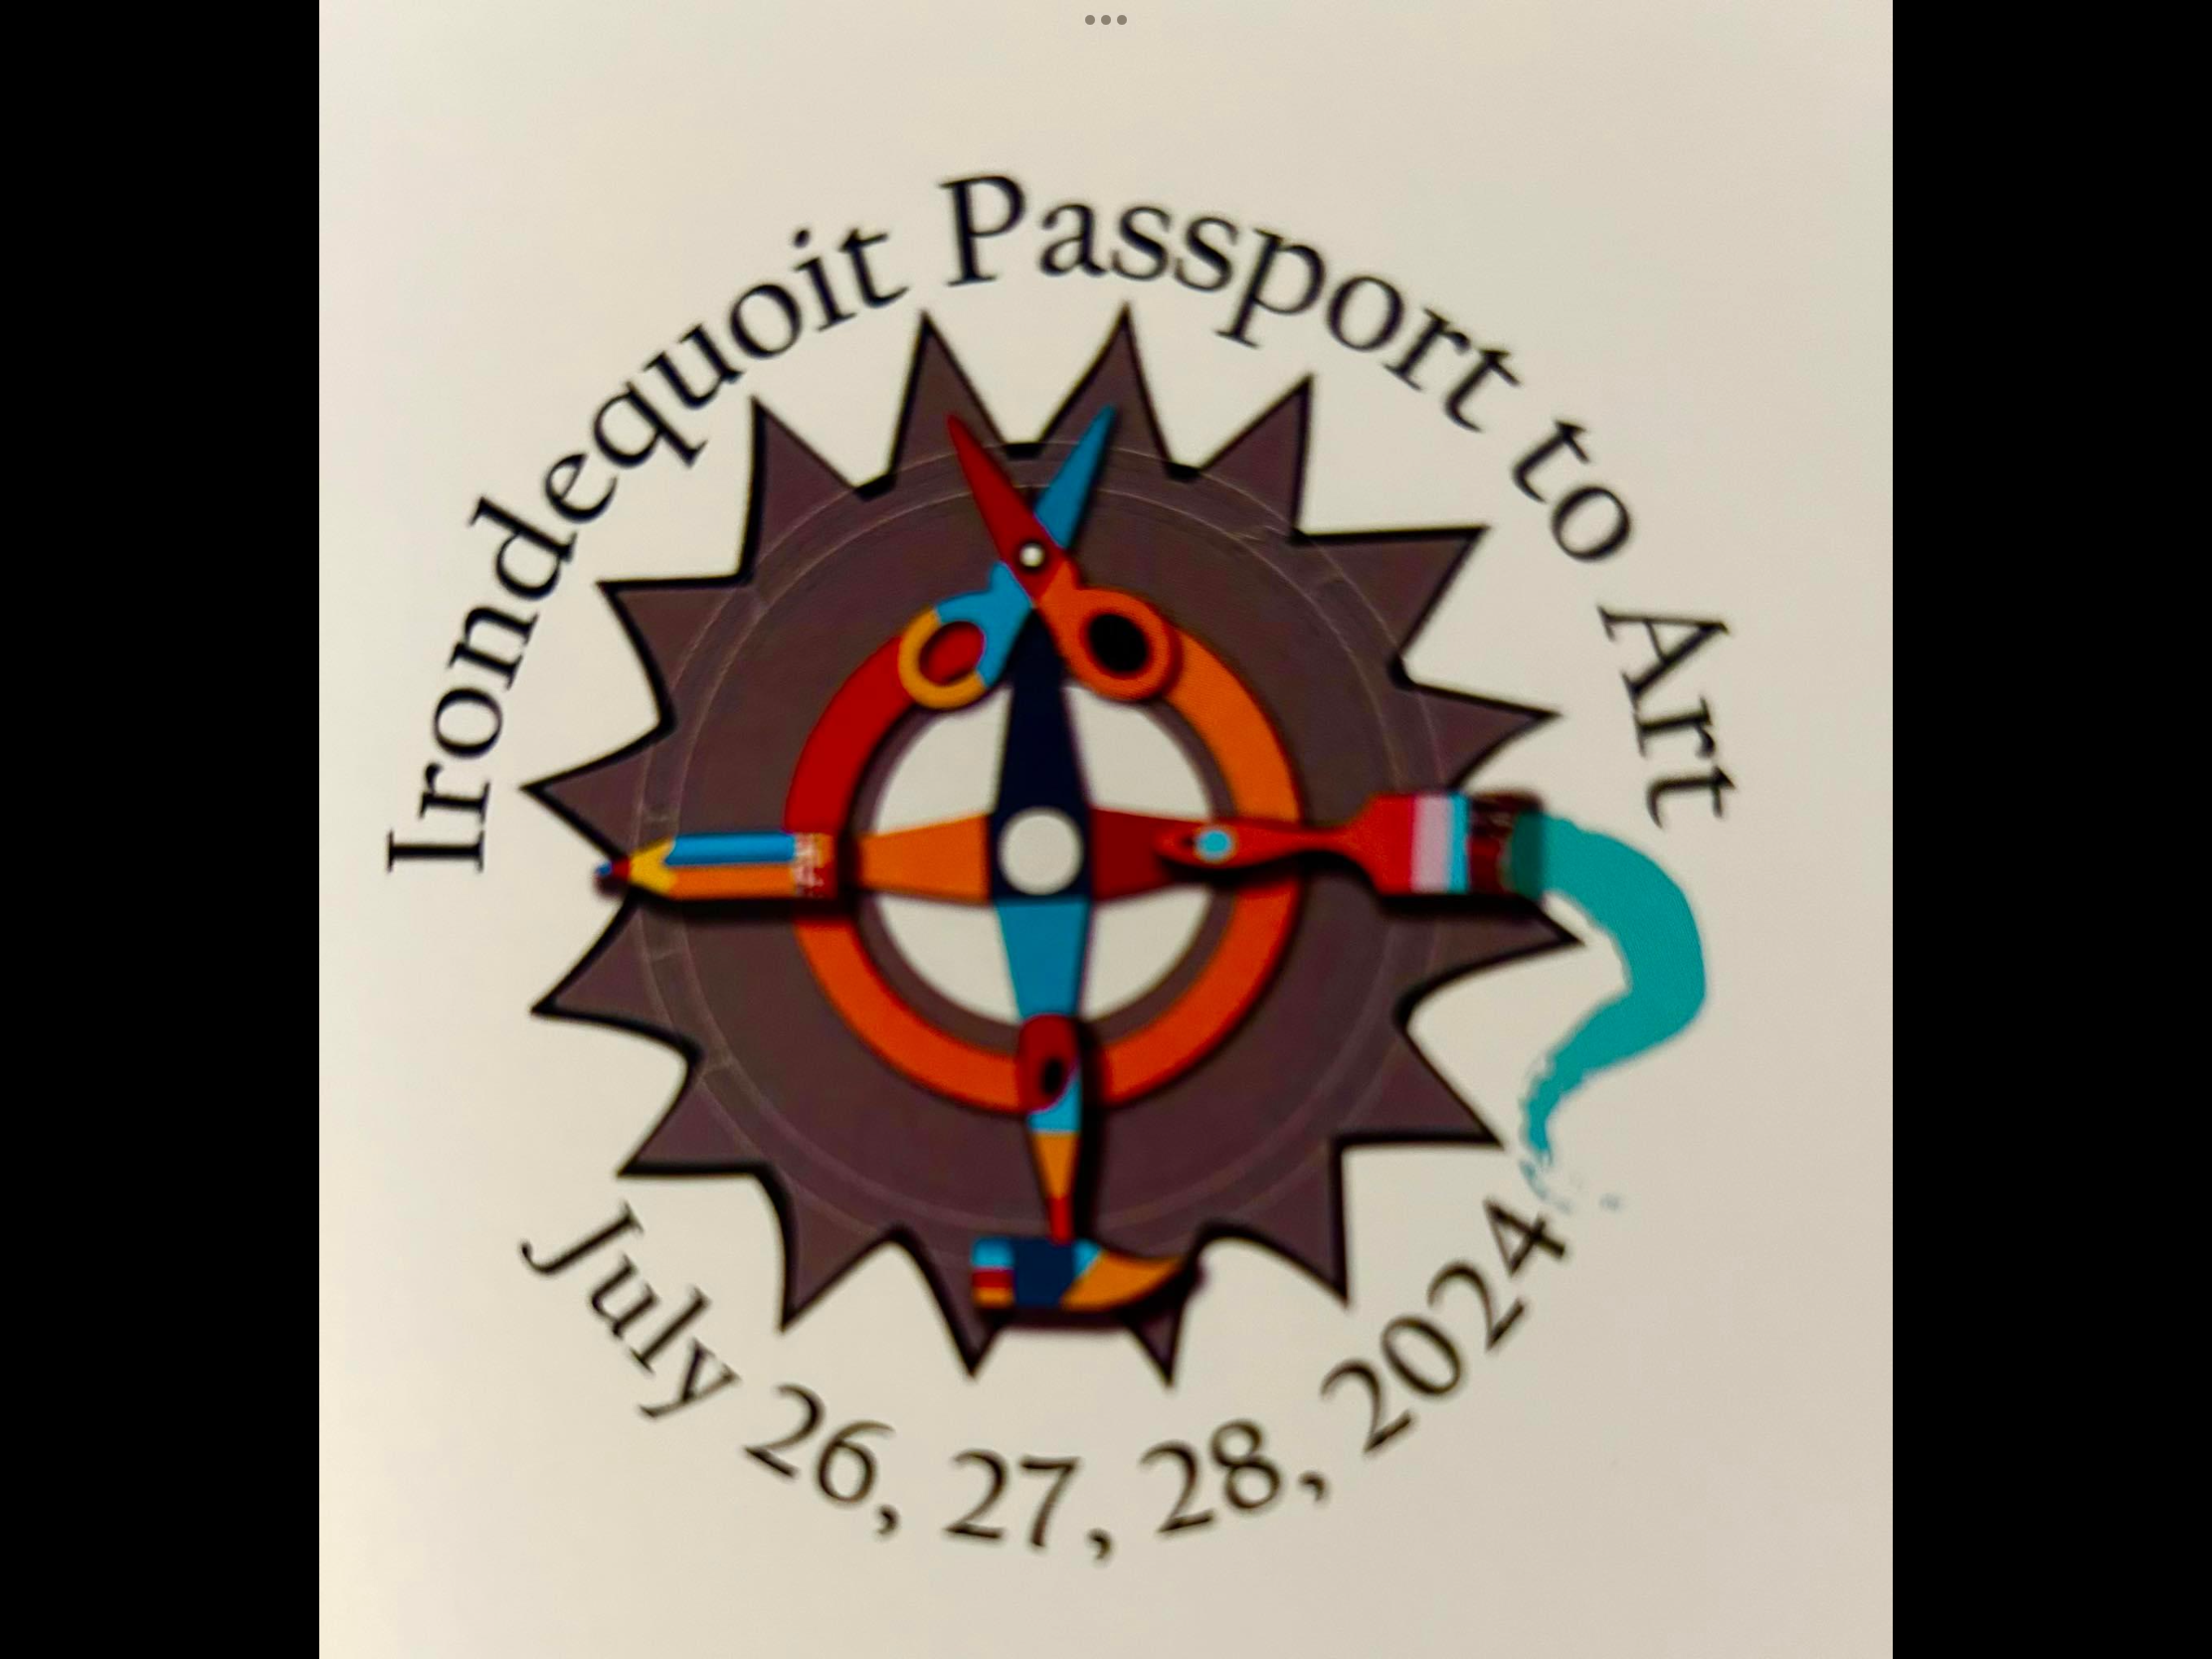 Irondequoit Passport to Art